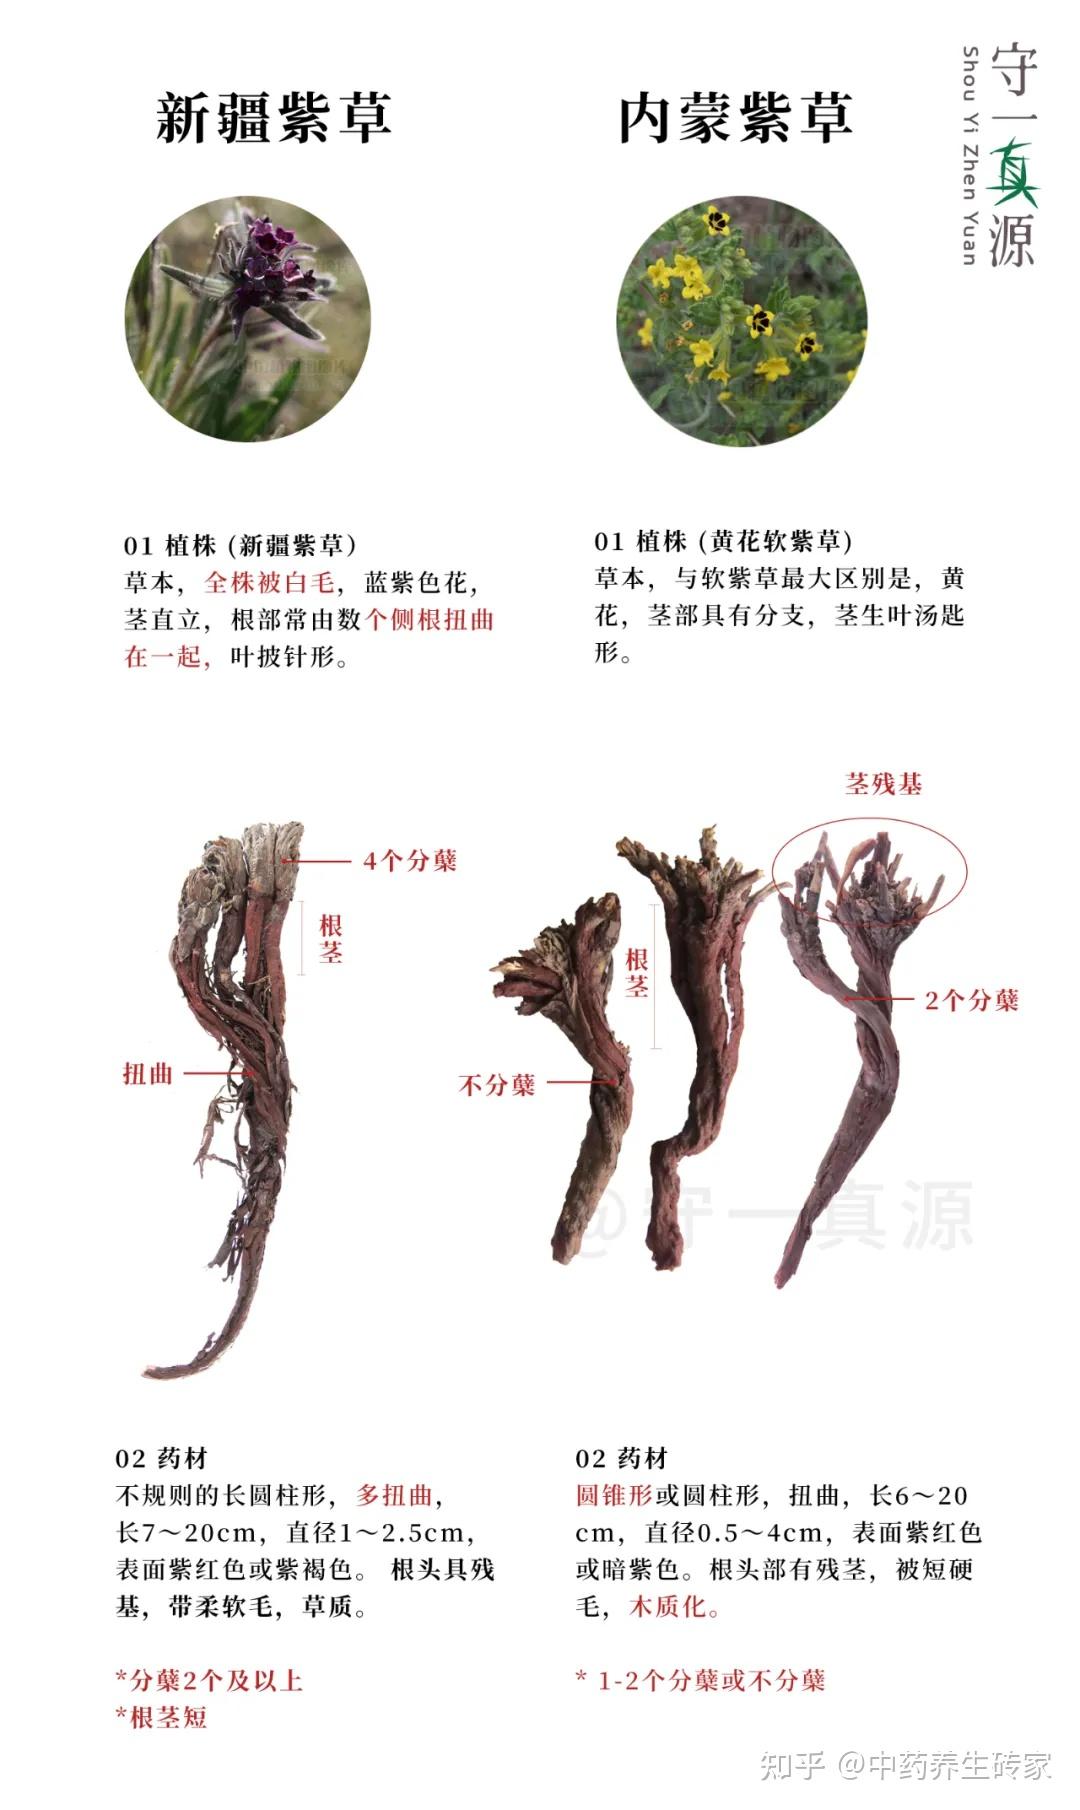 新疆紫草已列入二级濒危物种,愿规范种植的春风早吹来